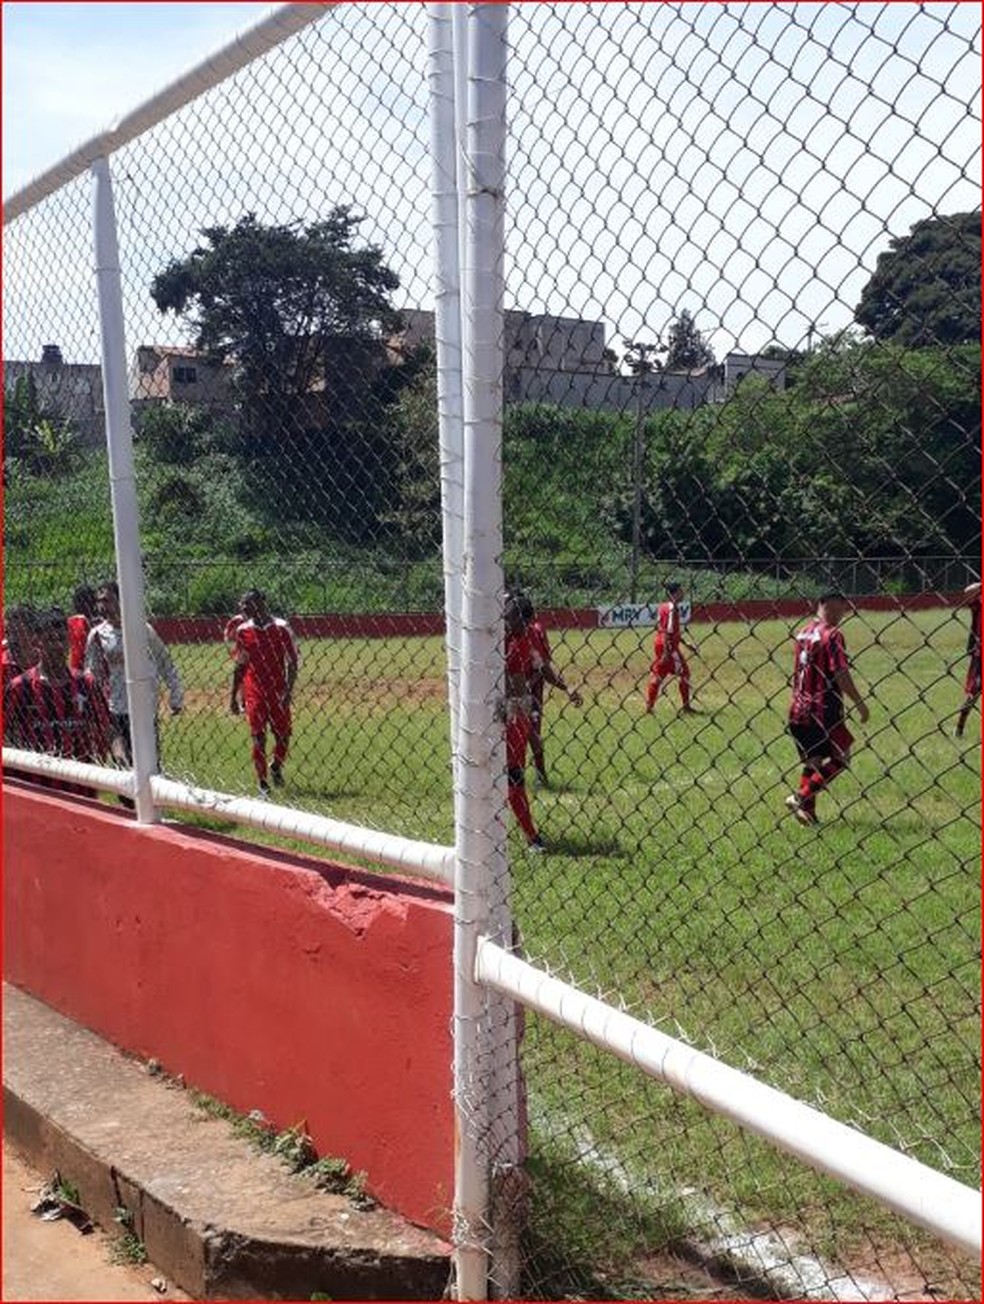 Jogo de futebol na Arena Pitangui — Foto: Redes sociais